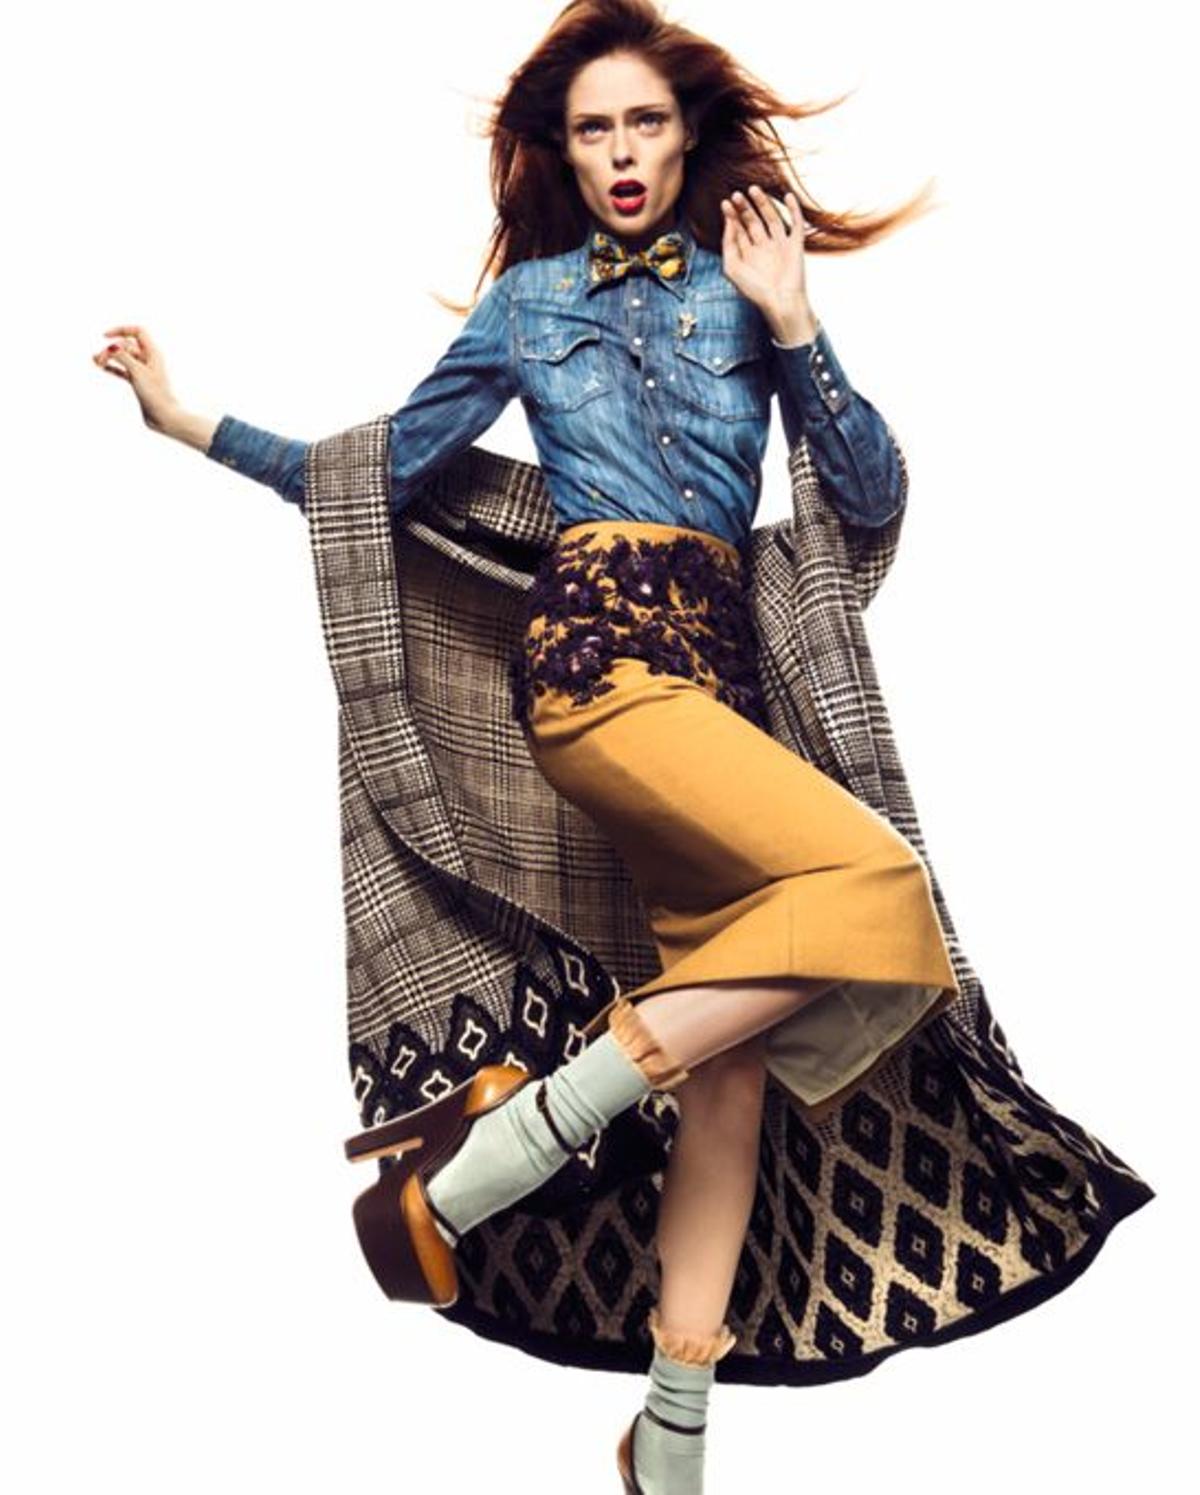 Coco Rocha, top model, tendencias, otoño, shopping, moda, abrigos, tweed, clásicos, trajes sastre